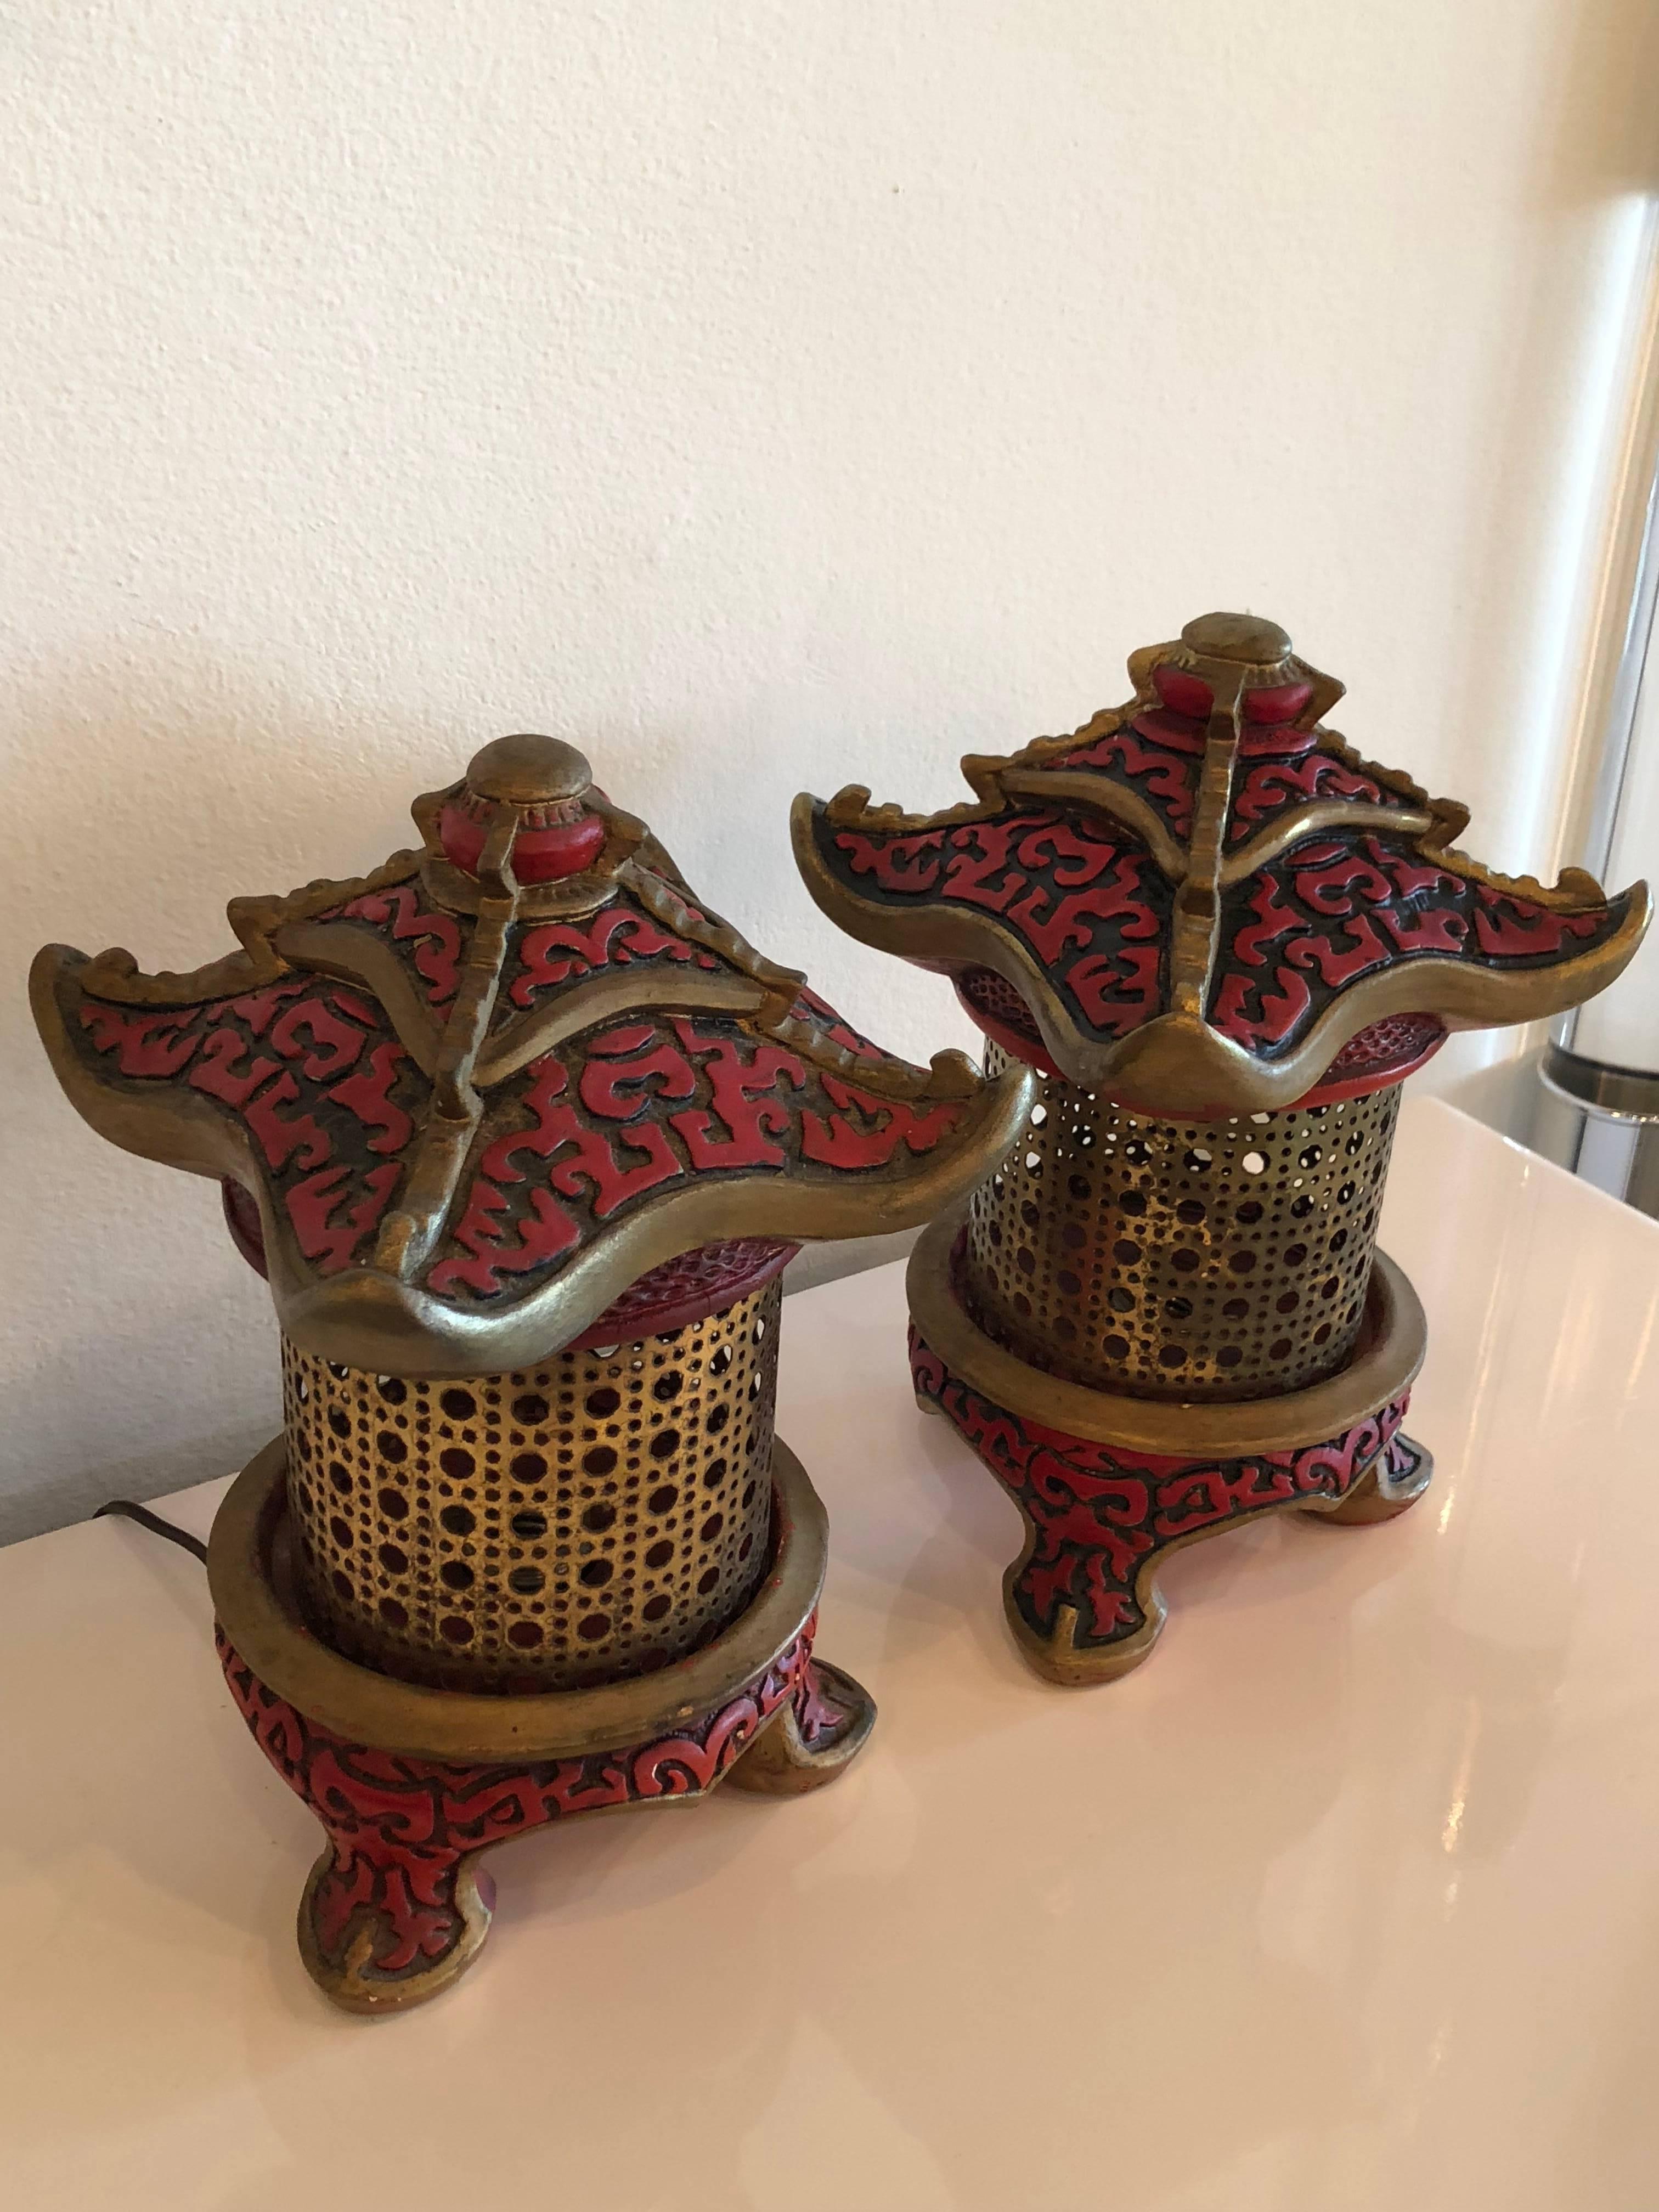 J'adore cette jolie paire de lampes de table vintage style lanterne pagode. Ils seront nouvellement câblés avant l'expédition. Le cordon sera muni d'un interrupteur marche/arrêt. Ils ont leur finition originale peinte à la main.
 